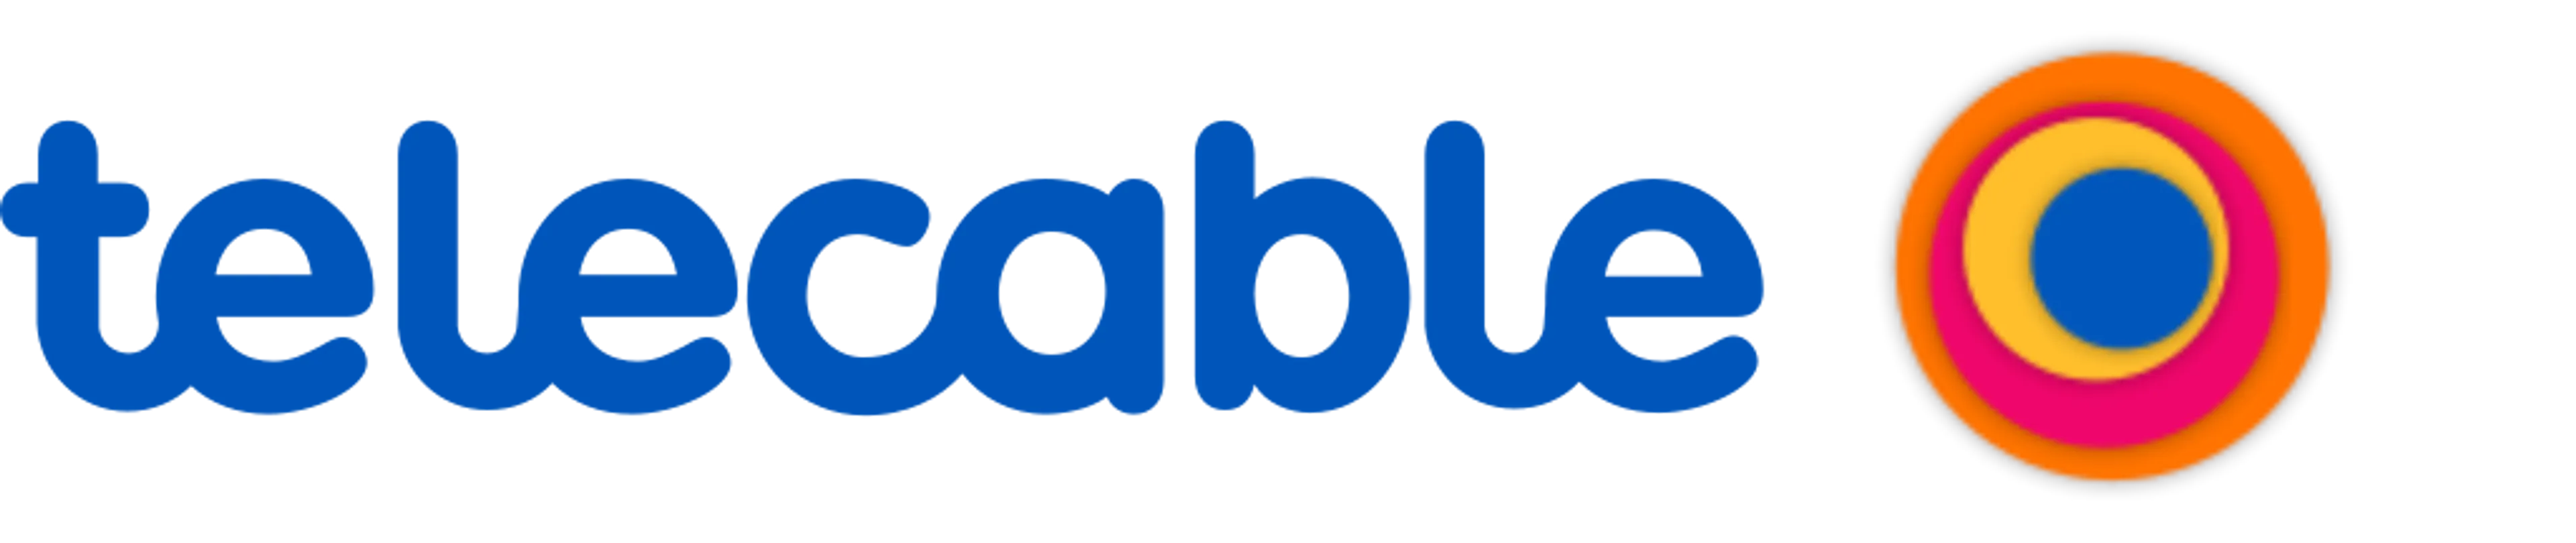 TELECABLE logo